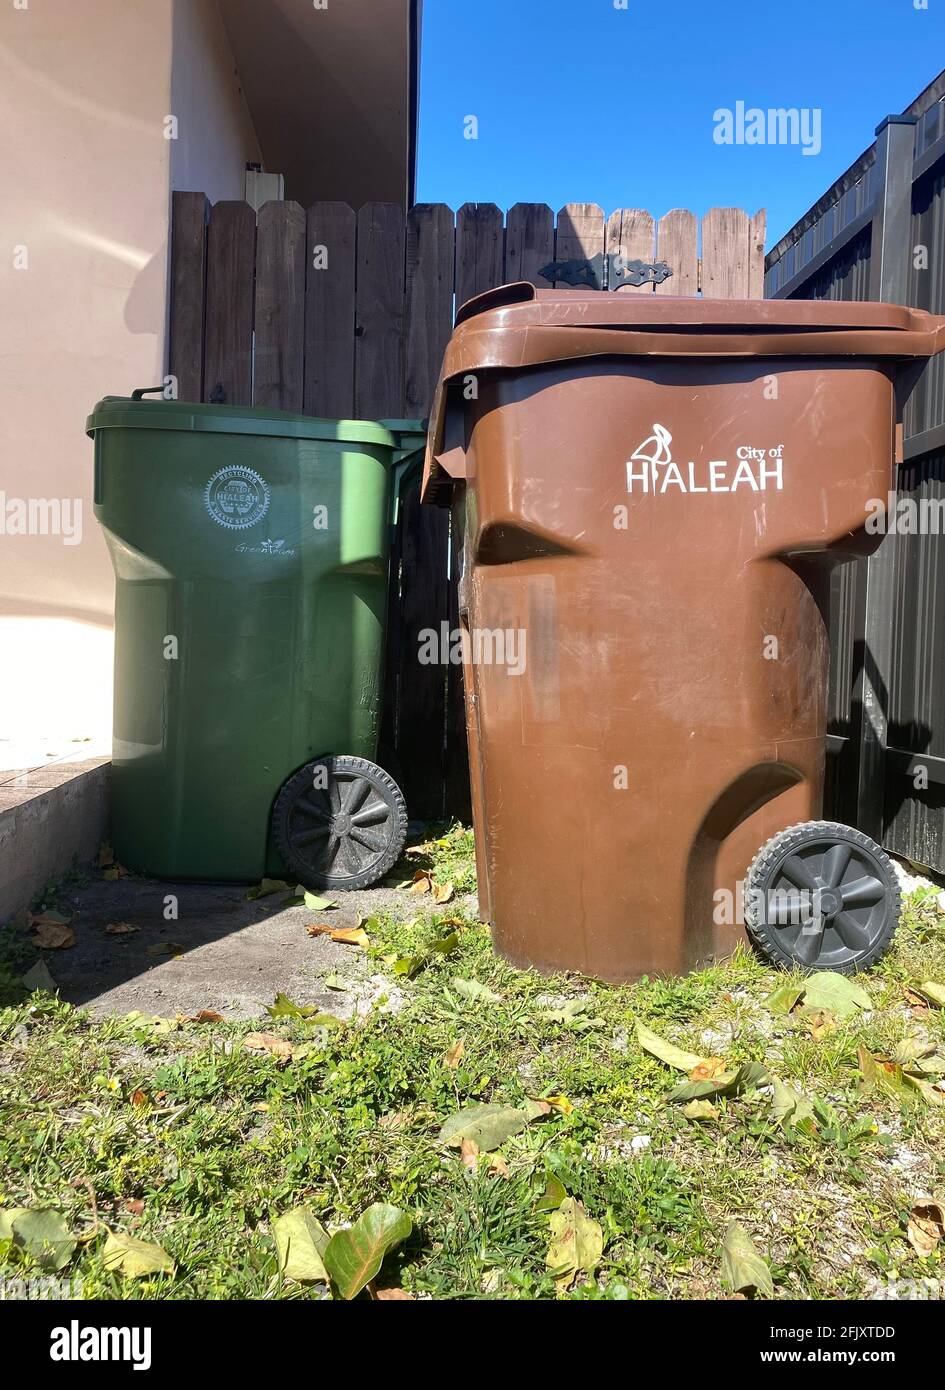 Mülltonne aus der Stadt Hialeah in der Nähe eines Wohnhauses in Miami Dade County. Stockfoto